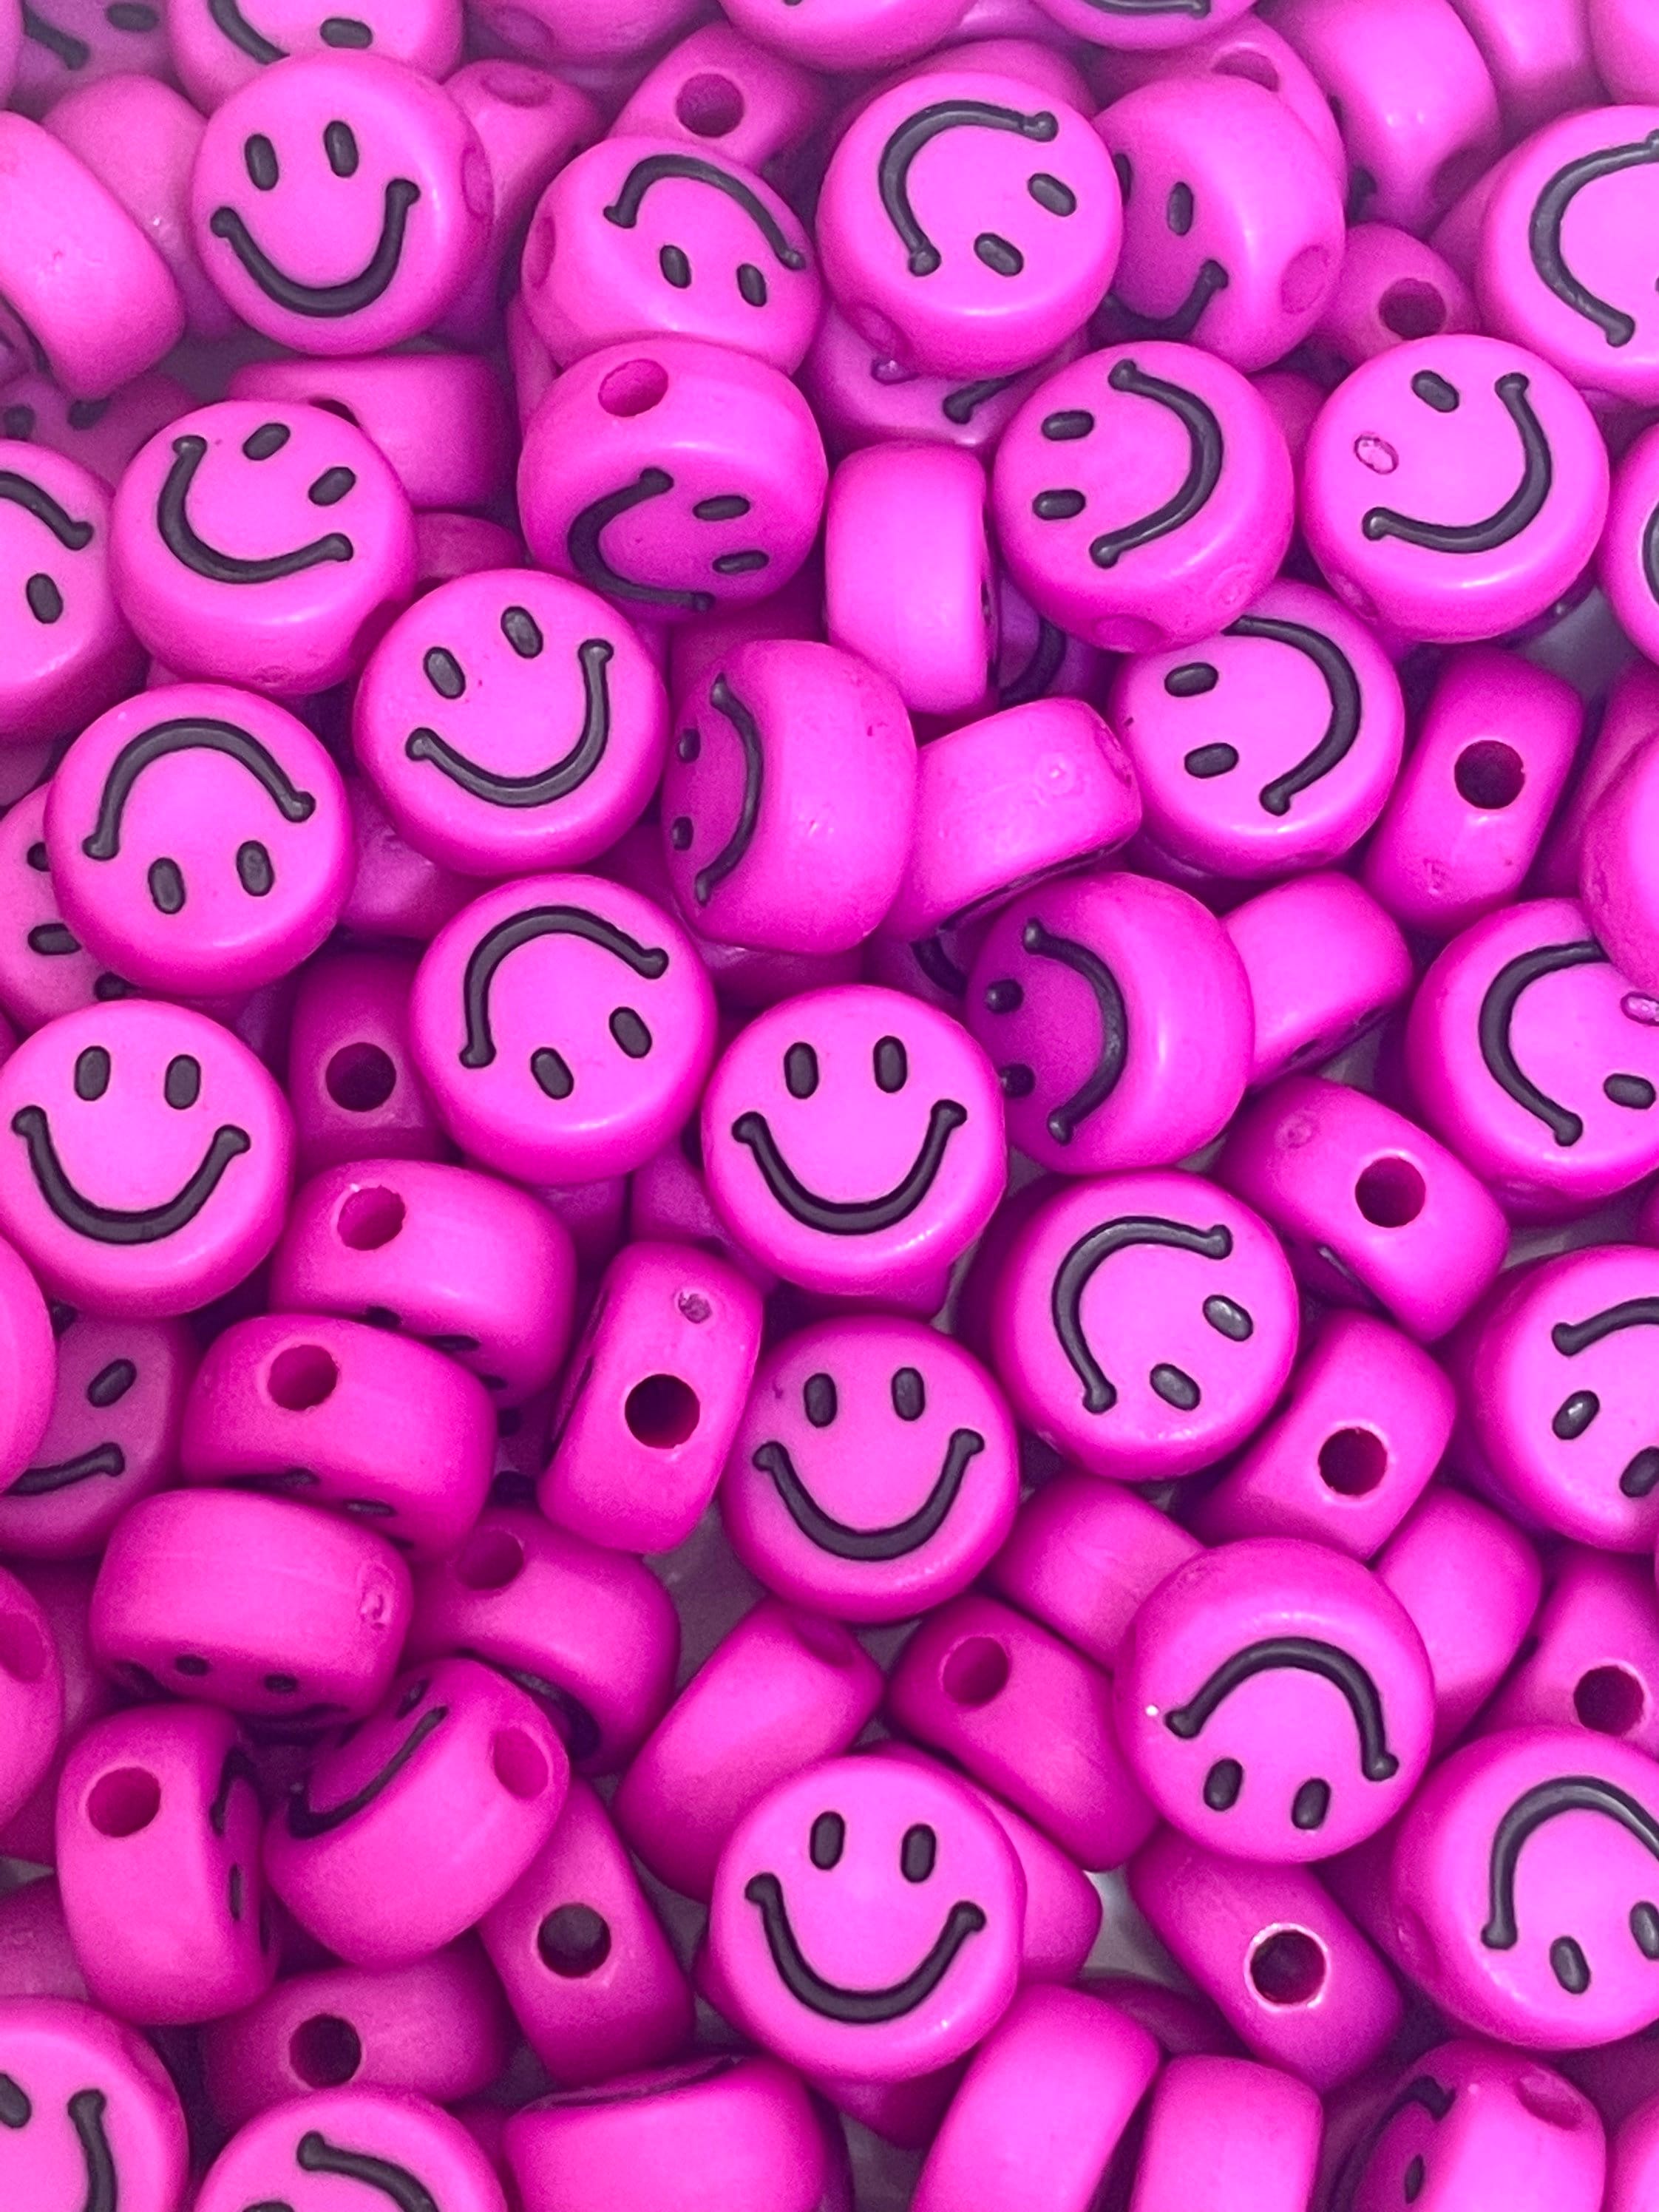 Vòng đeo tay hạt emoji hồng dễ thương: Những vòng đeo tay emoji hồng dễ thương là món phụ kiện không thể thiếu cho những bạn trẻ yêu thích phong cách cá tính và độc đáo. Với chất liệu chắc chắn và máy móc hoàn hảo, sản phẩm sẽ mang lại sự hài lòng và tin cậy cho bạn.